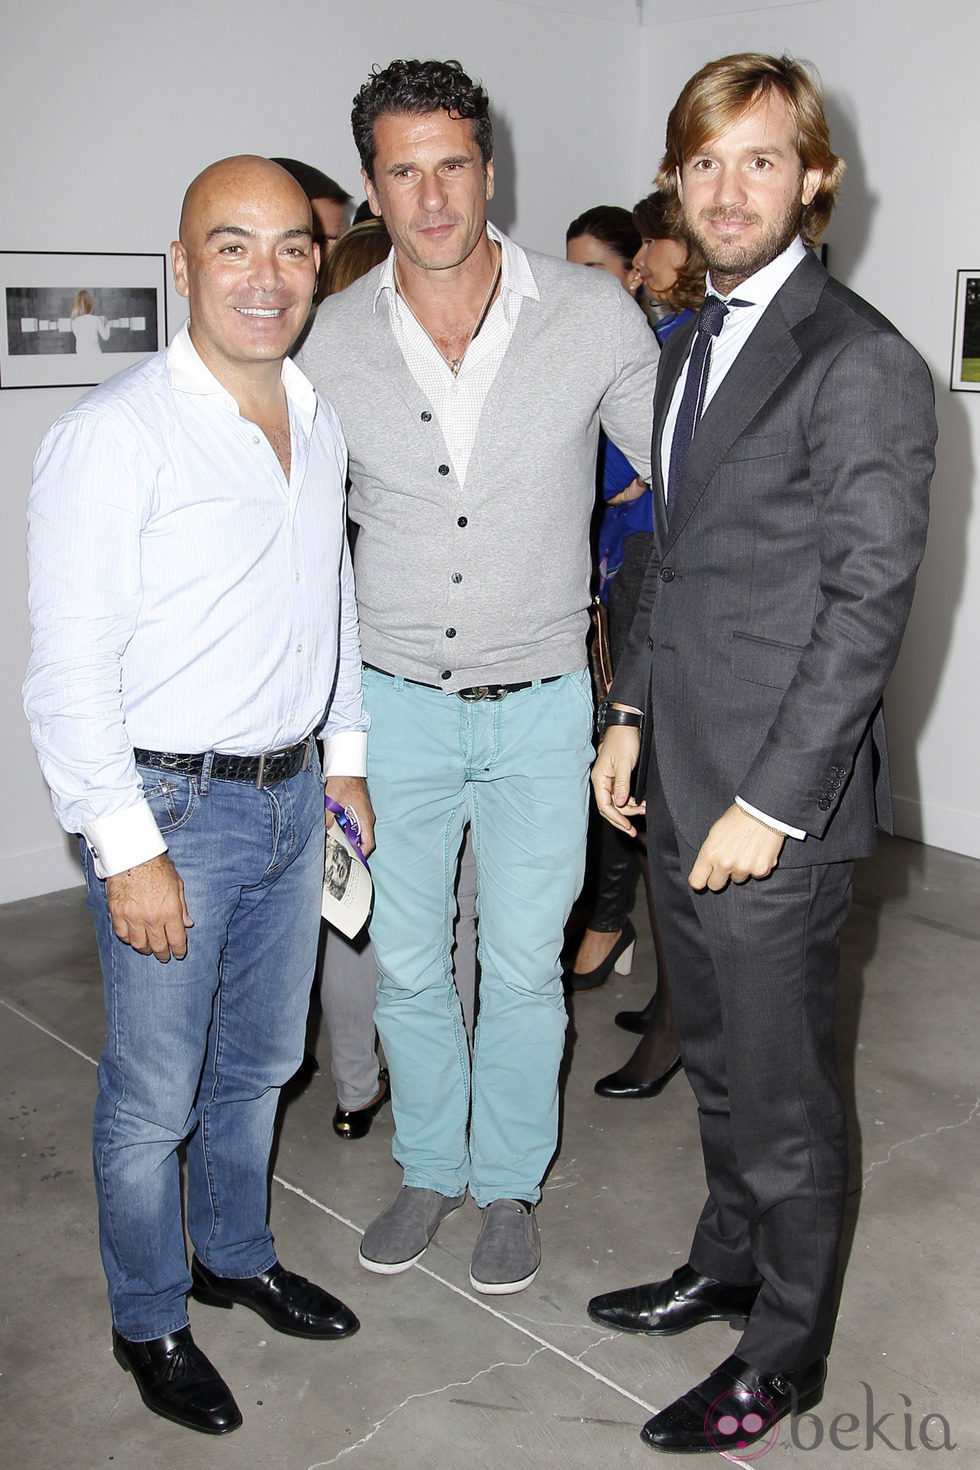 Kike Sarasola, Carlos Marrero y Rosauro Baro en la exposición fotográfica 'Upcycling'